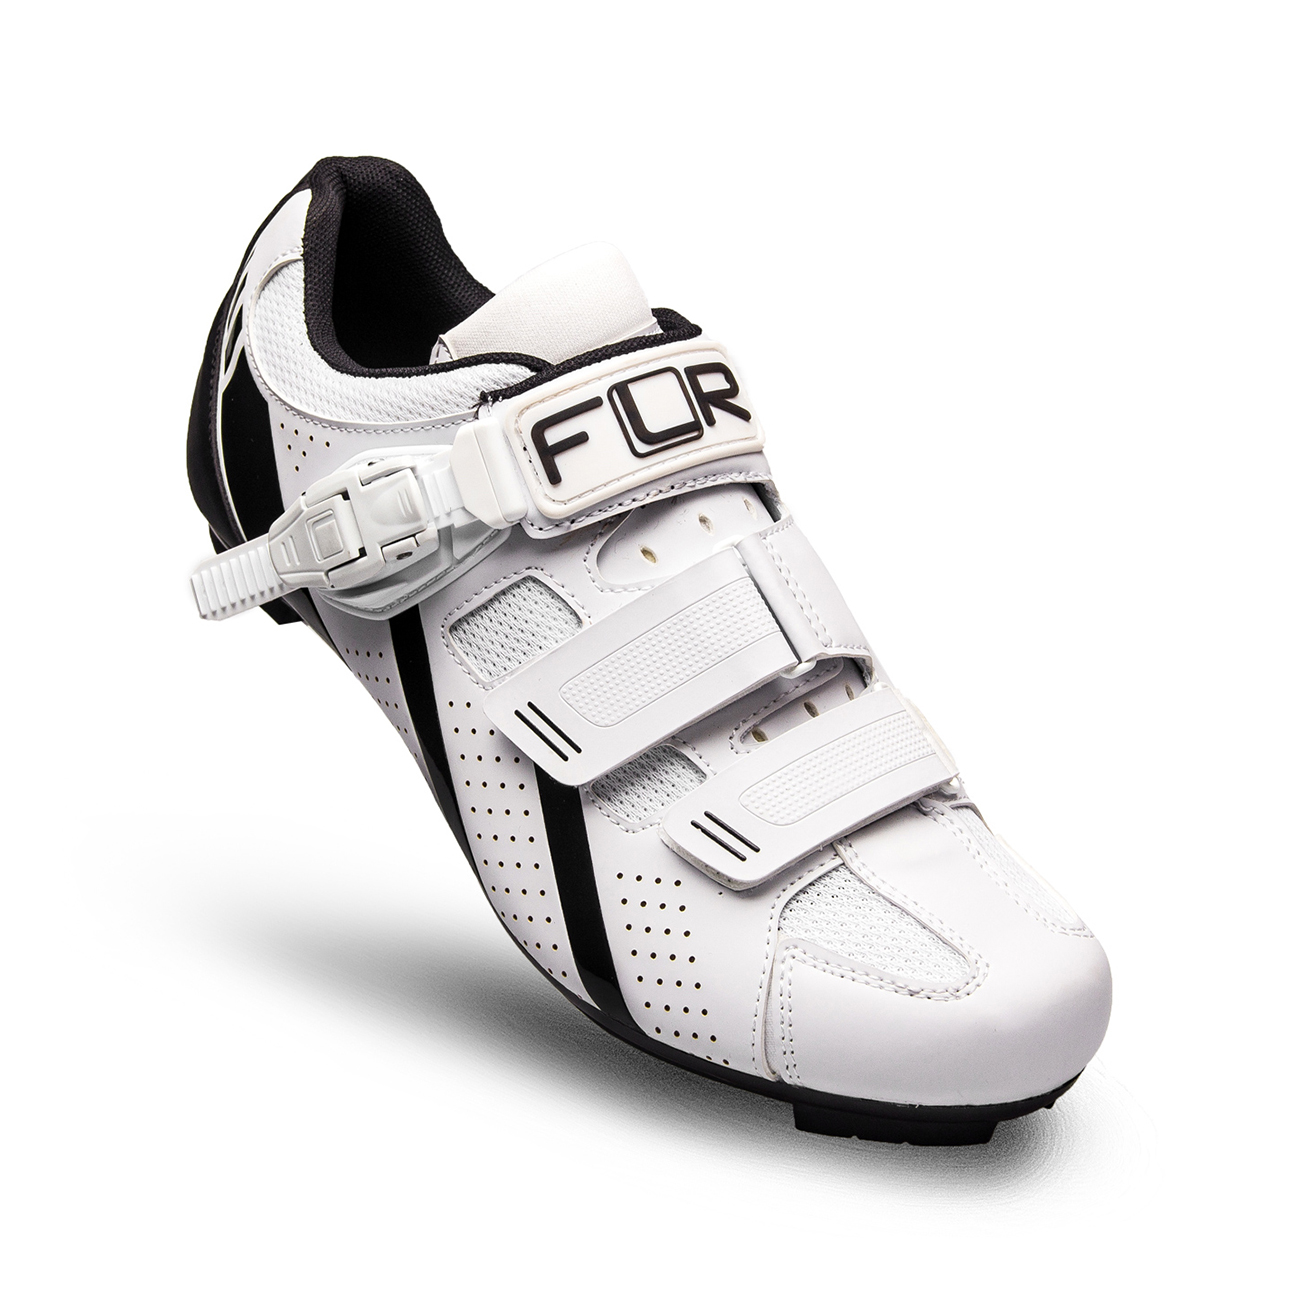 
                FLR Cyklistické tretry - F15 - biela/čierna 44
            